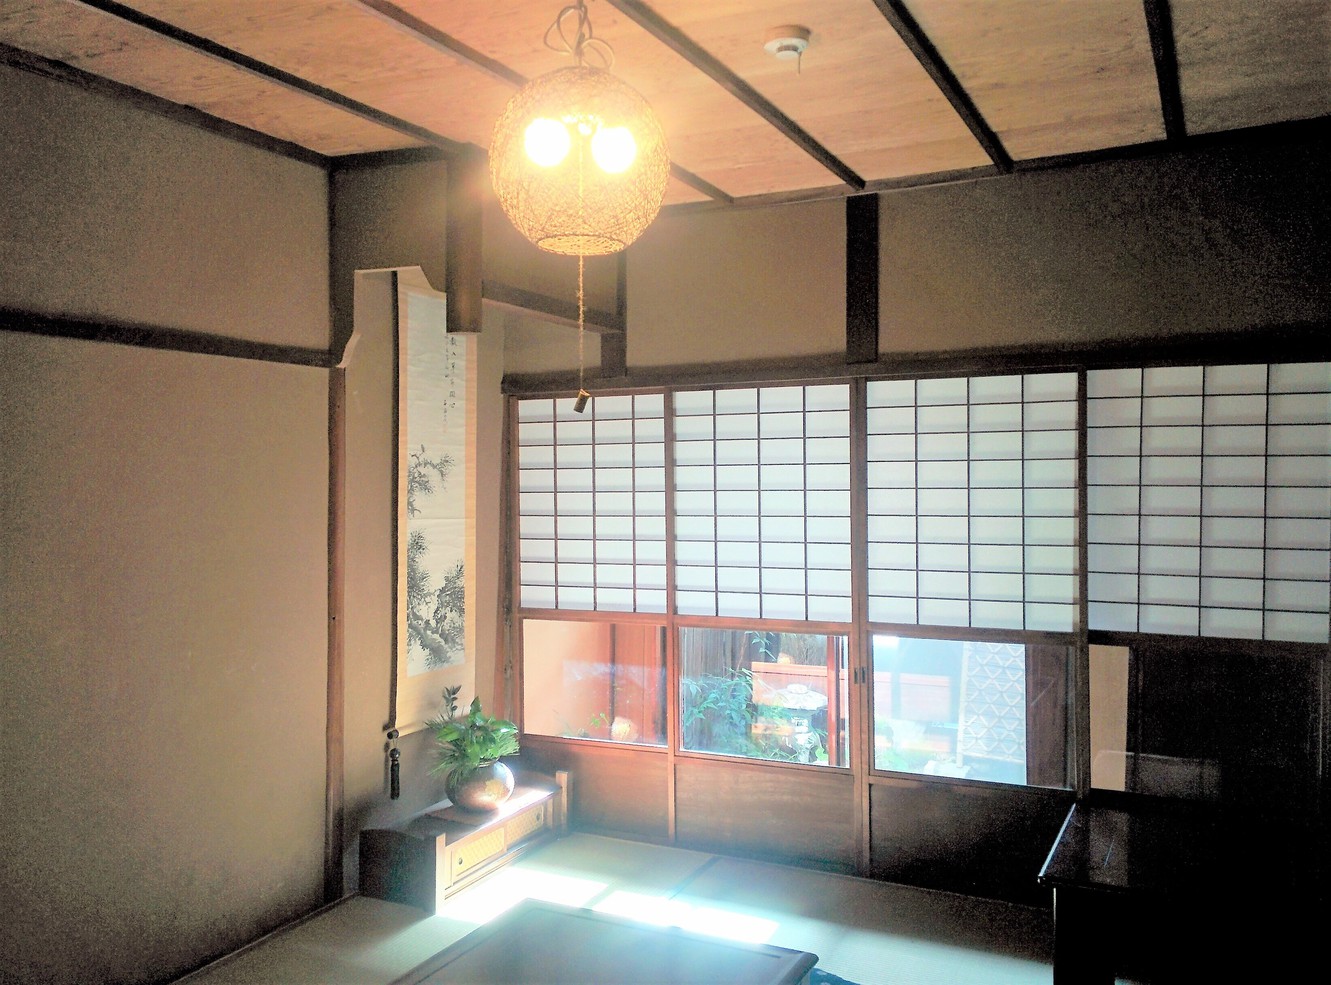 居間昭和初期の雰囲気が残っています